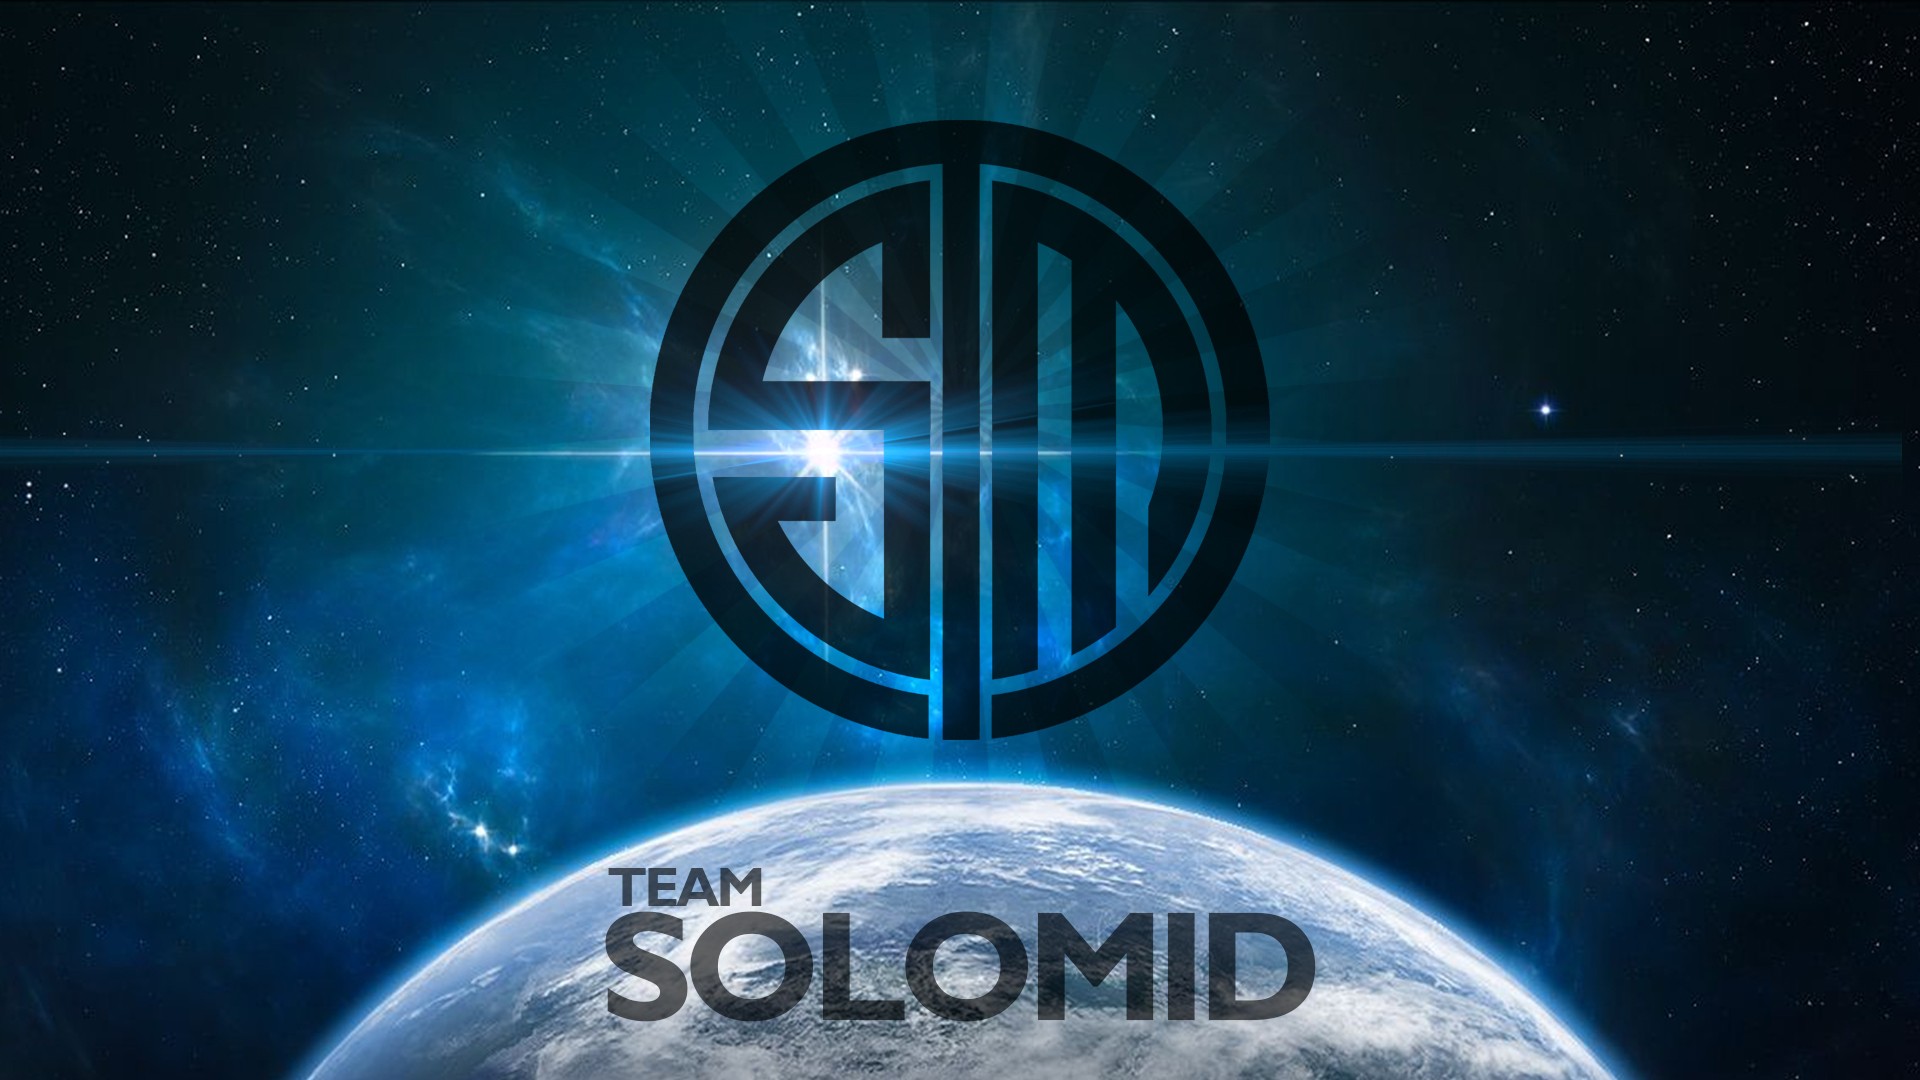 Team Solomid, League Of Legends, Esports Wallpaper